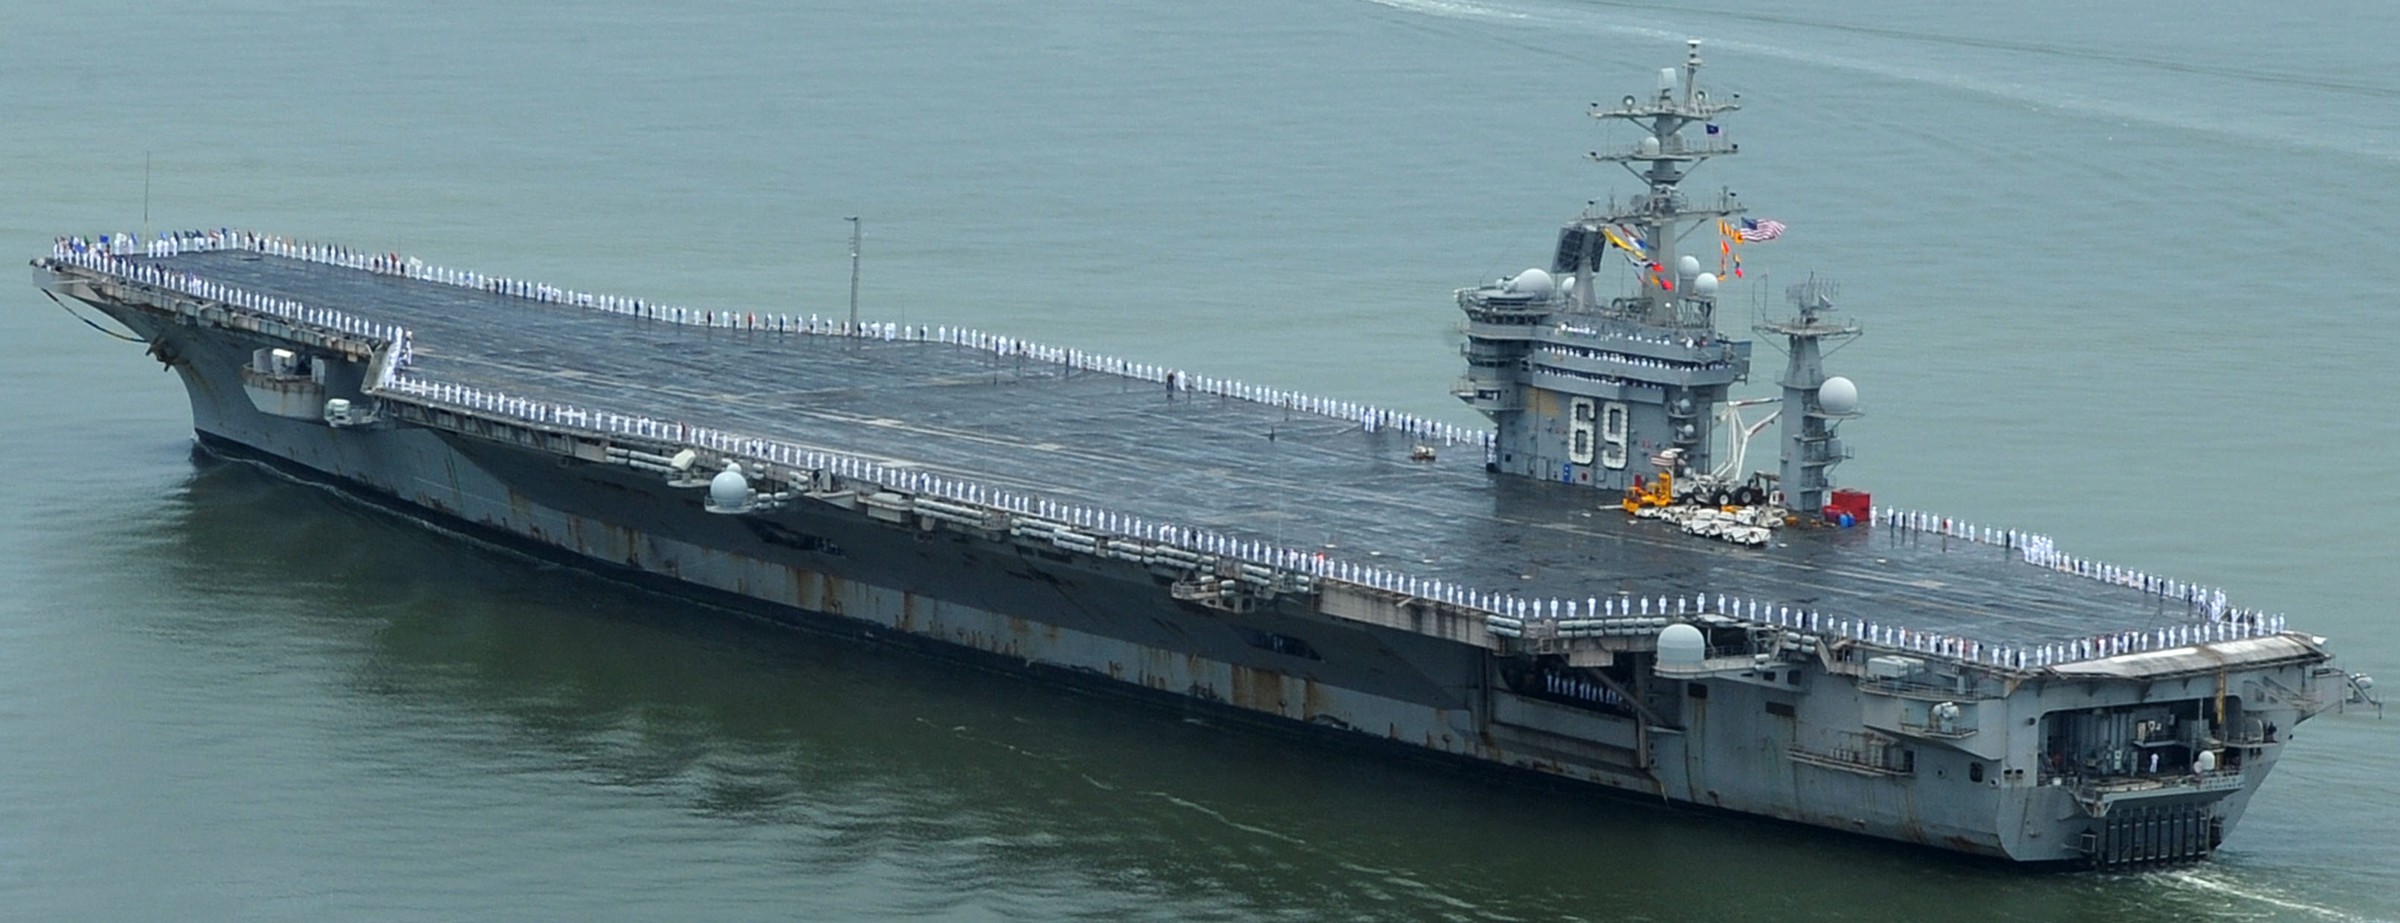 cvn-69 uss dwight d. eisenhower aircraft carrier us navy 410